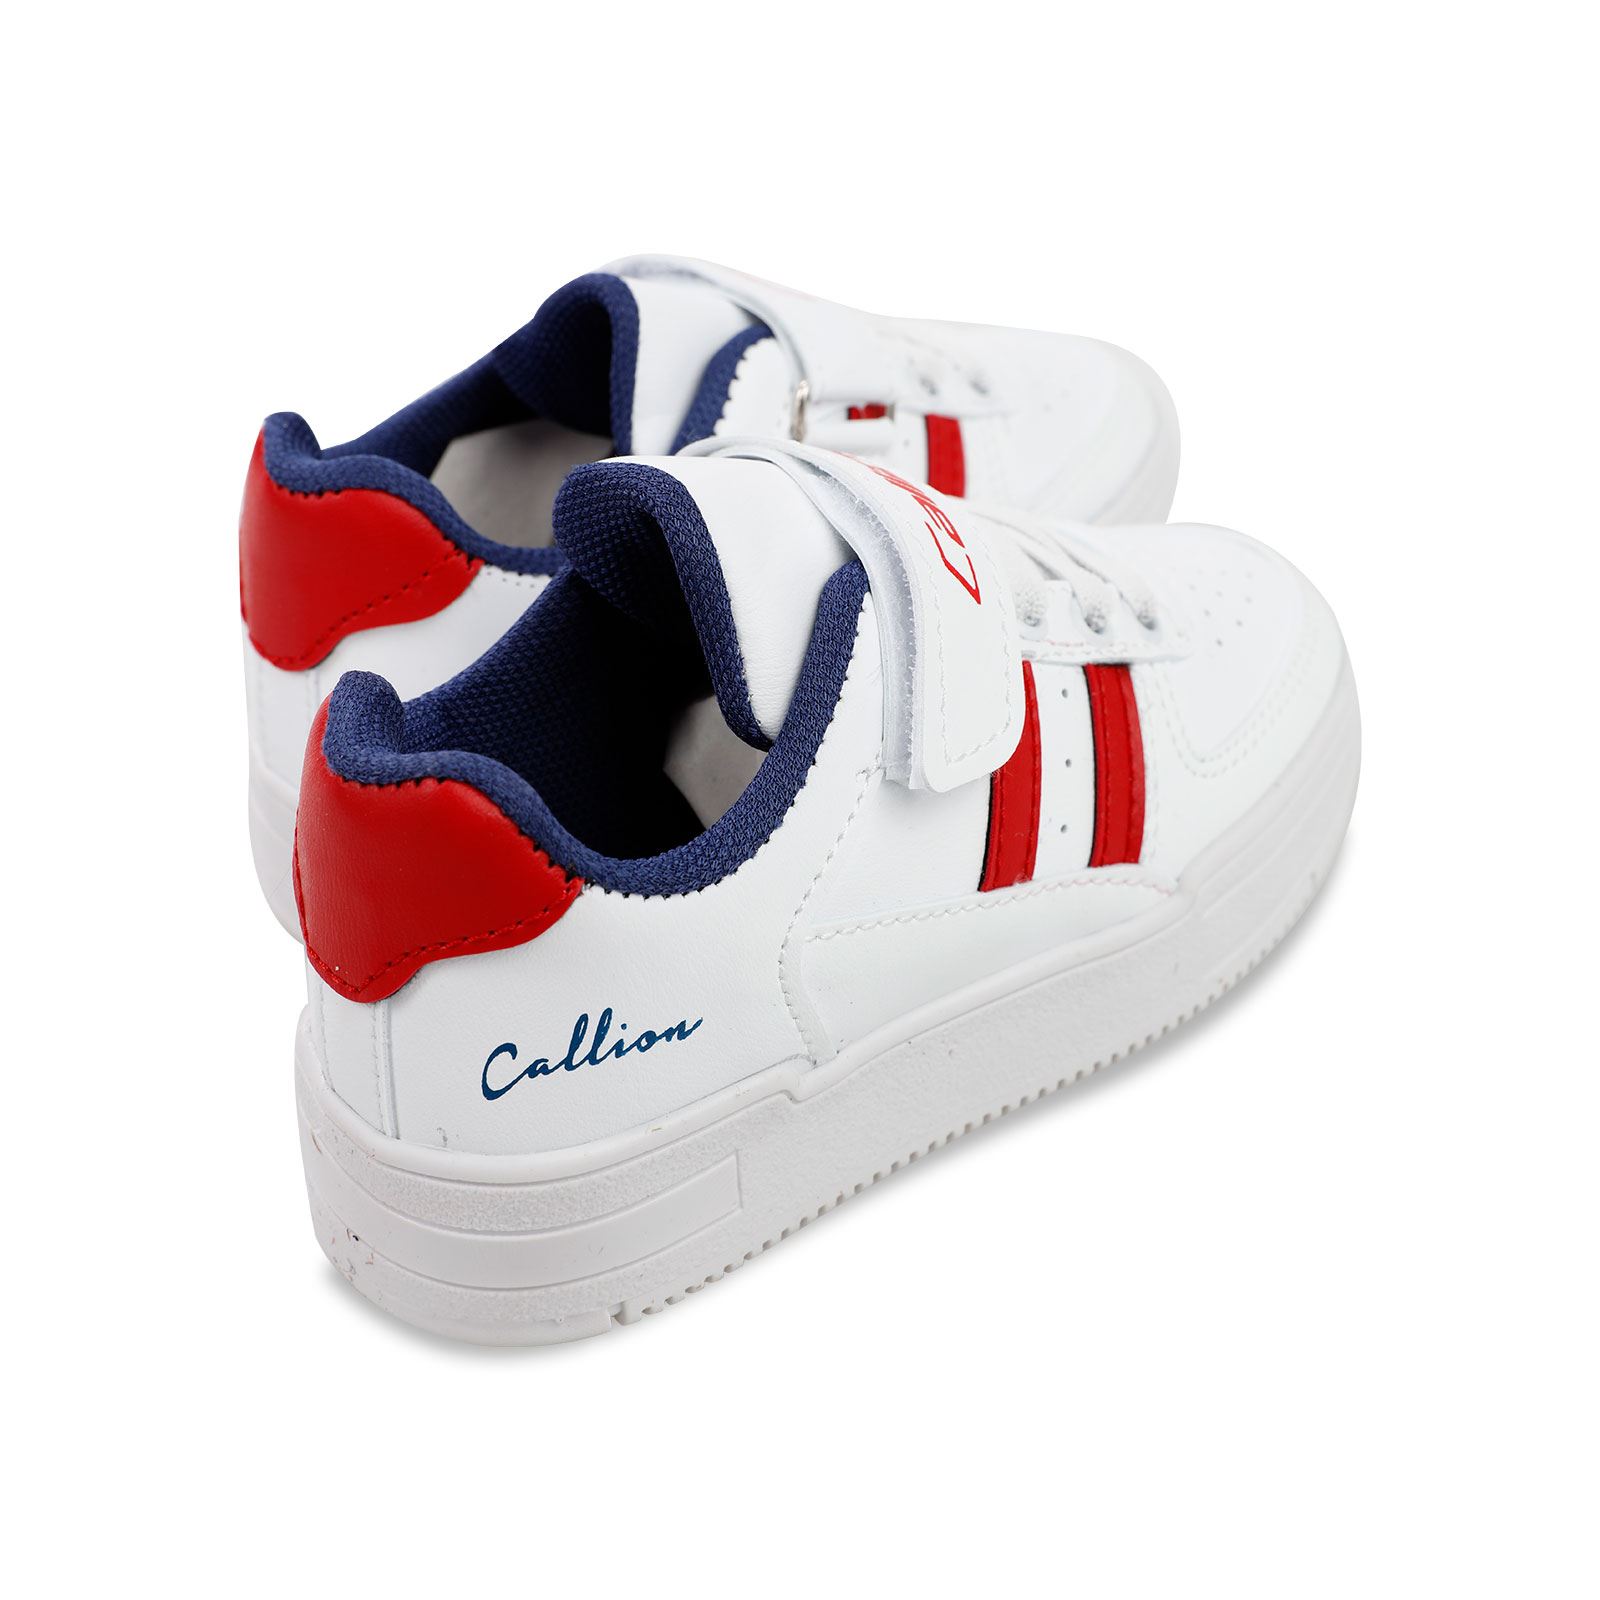 Callion Erkek Çocuk Spor Ayakkabı 31-35 Numara Beyaz